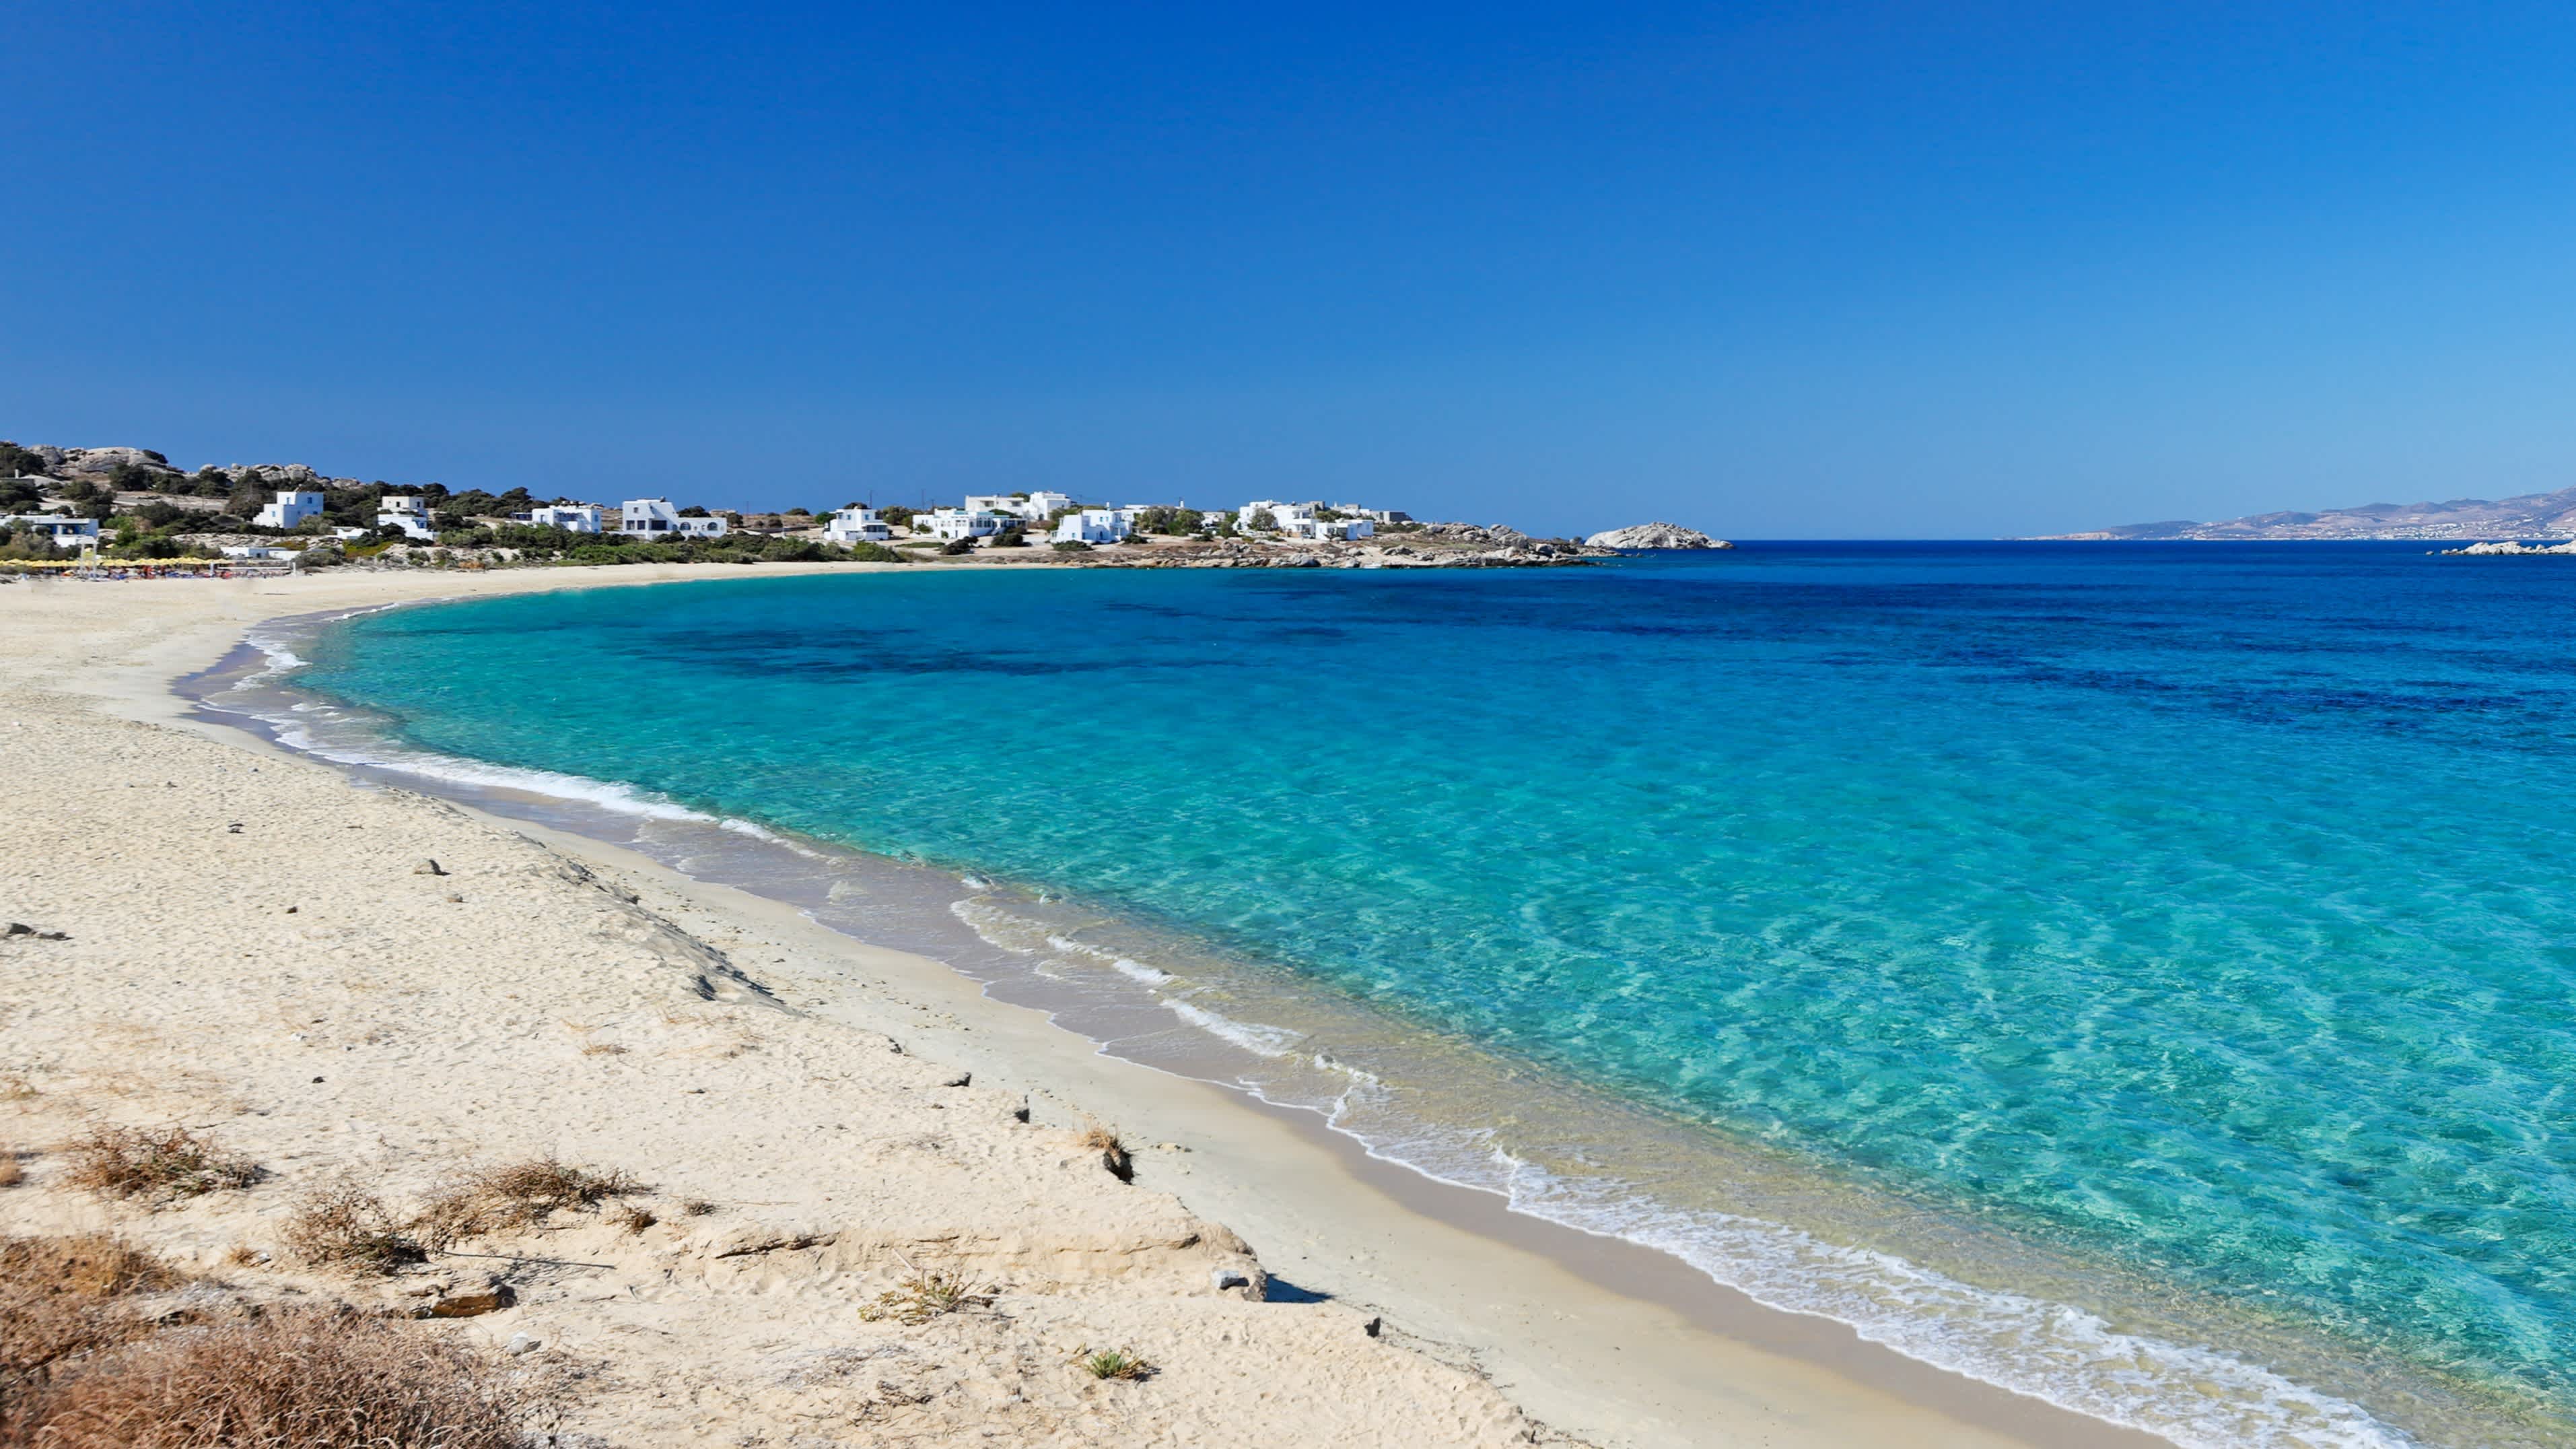 Strand des Limanaki Bay auf Naxos, Griechenland, mit weißem Sand und türkisblauem Meer.